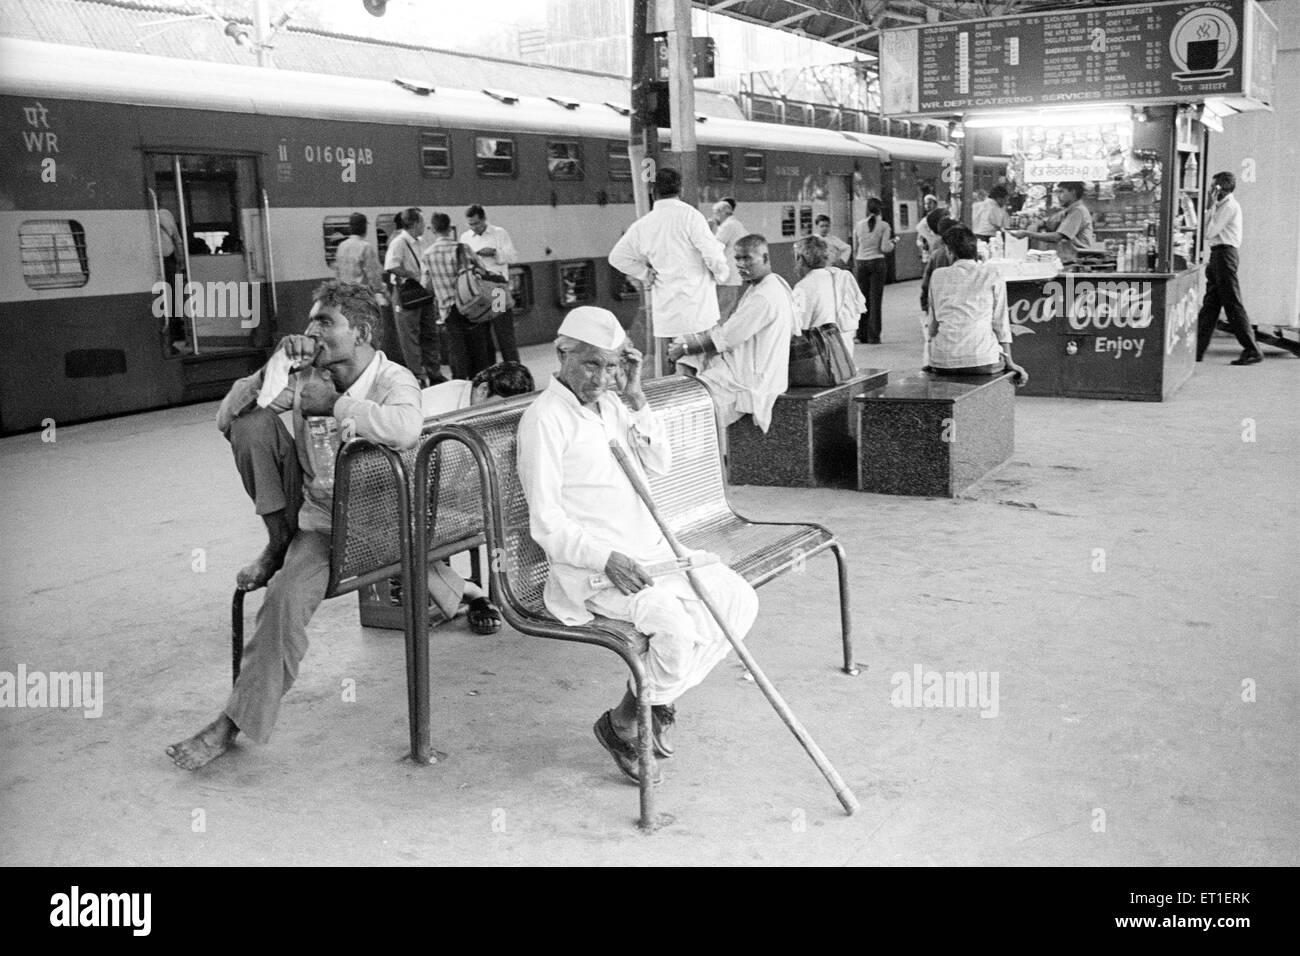 Scene at charni road railway station ; Bombay Mumbai ; Maharashtra ; India NO MR Stock Photo